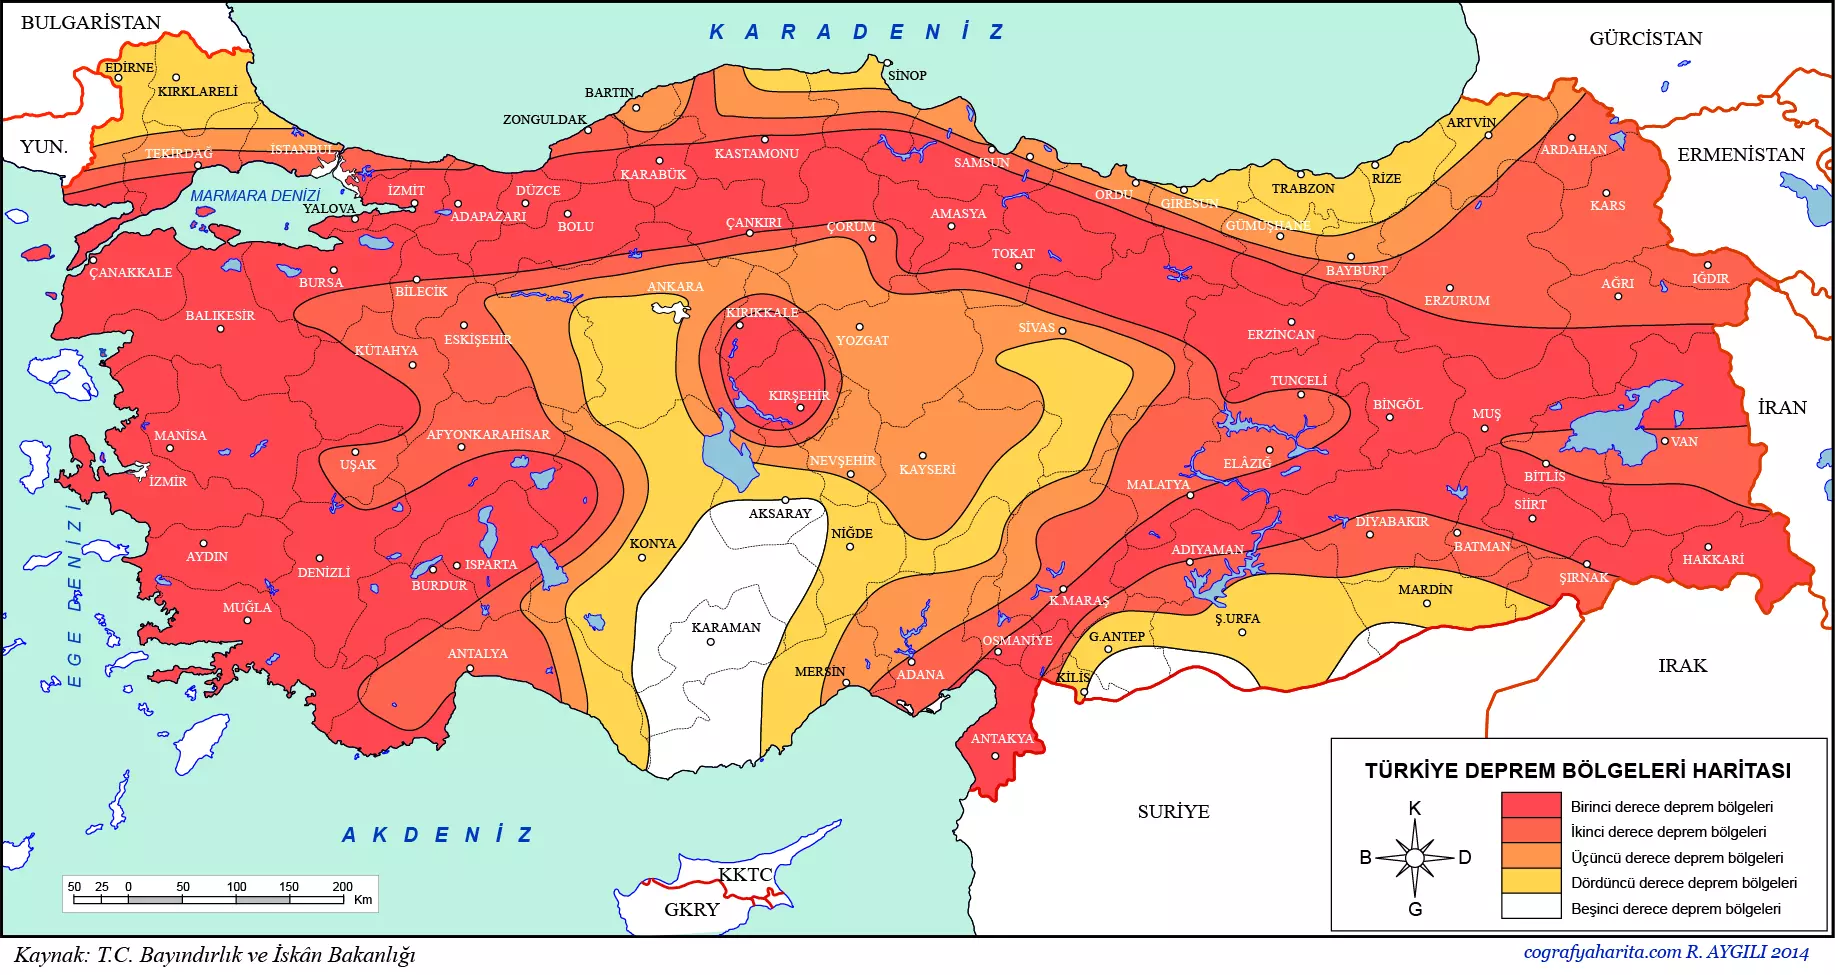 turkiye-deprem-bolgeleri-haritasi.webp